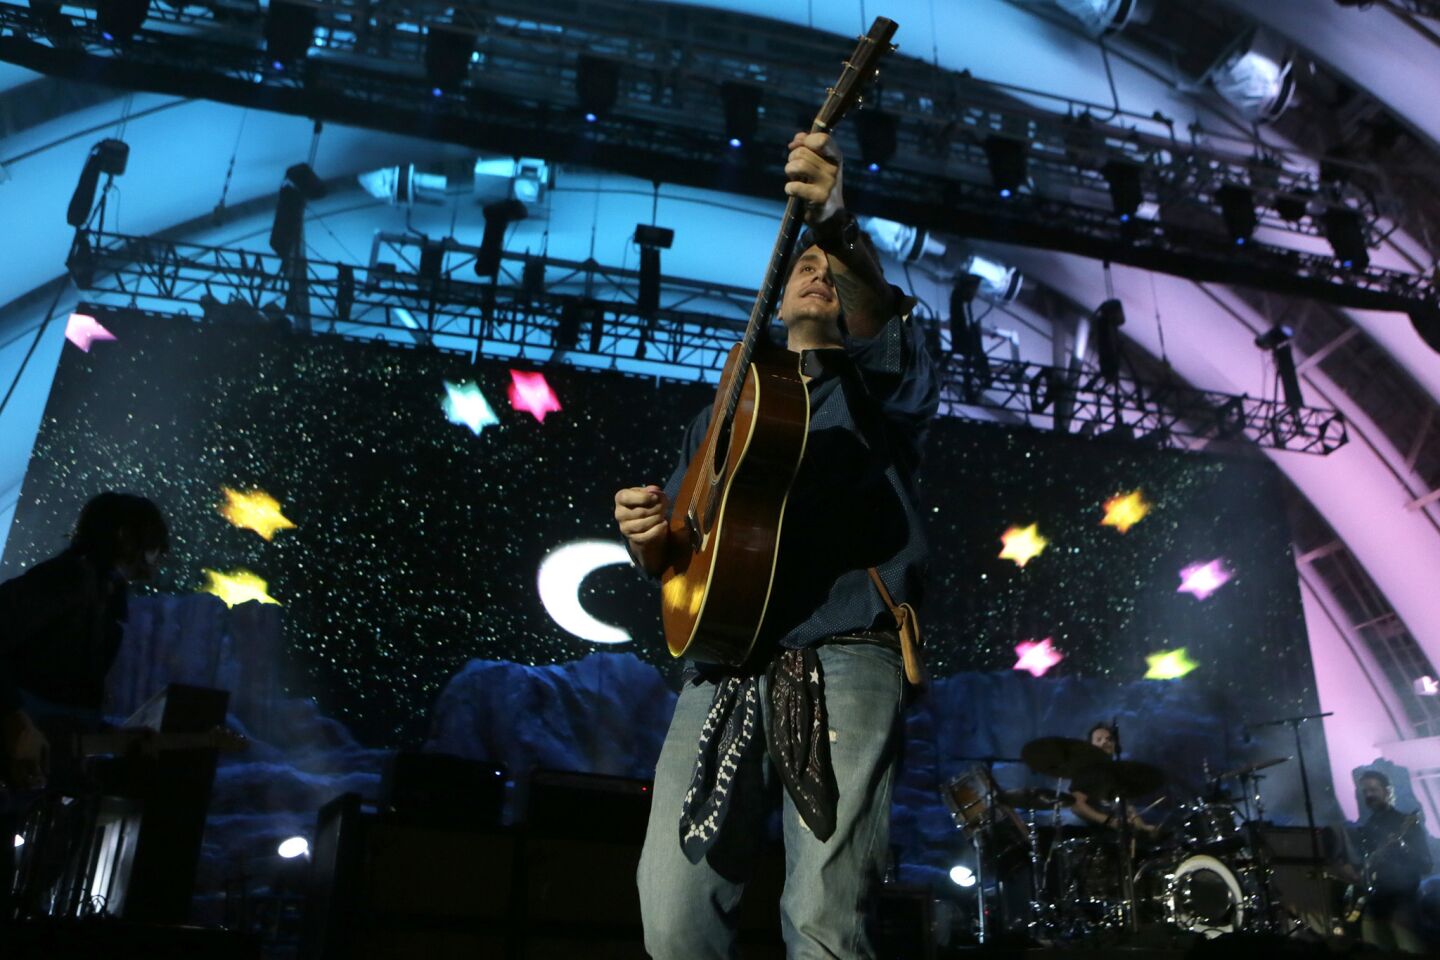 John Mayer concert